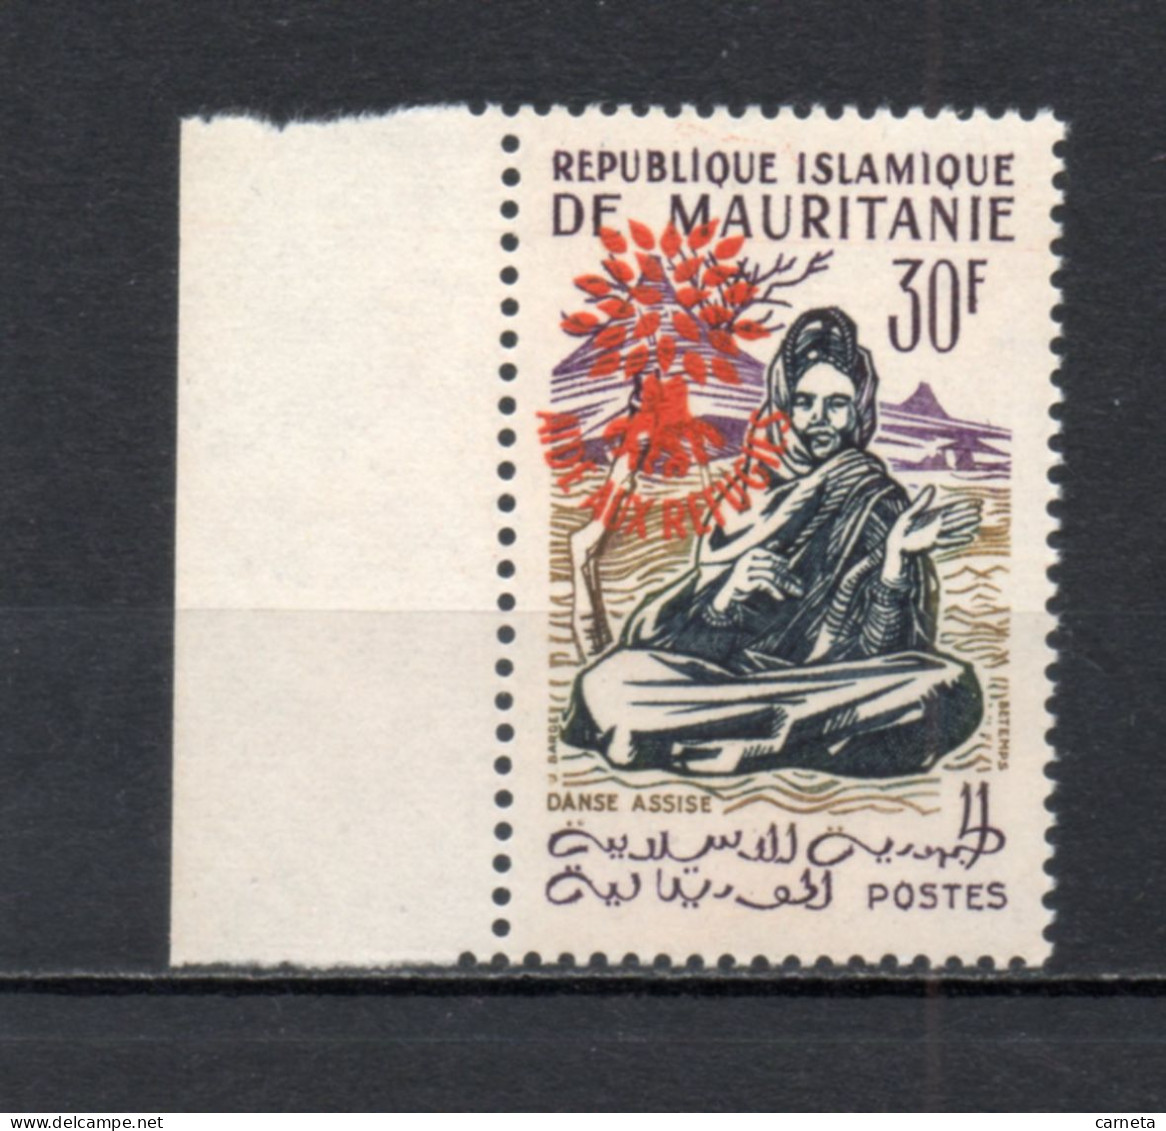 MAURITANIE  N° 154E   NEUF SANS CHARNIERE   COTE 20.00€    DANSE AIDE AUX REFIGIES SURCHARGE - Mauritania (1960-...)